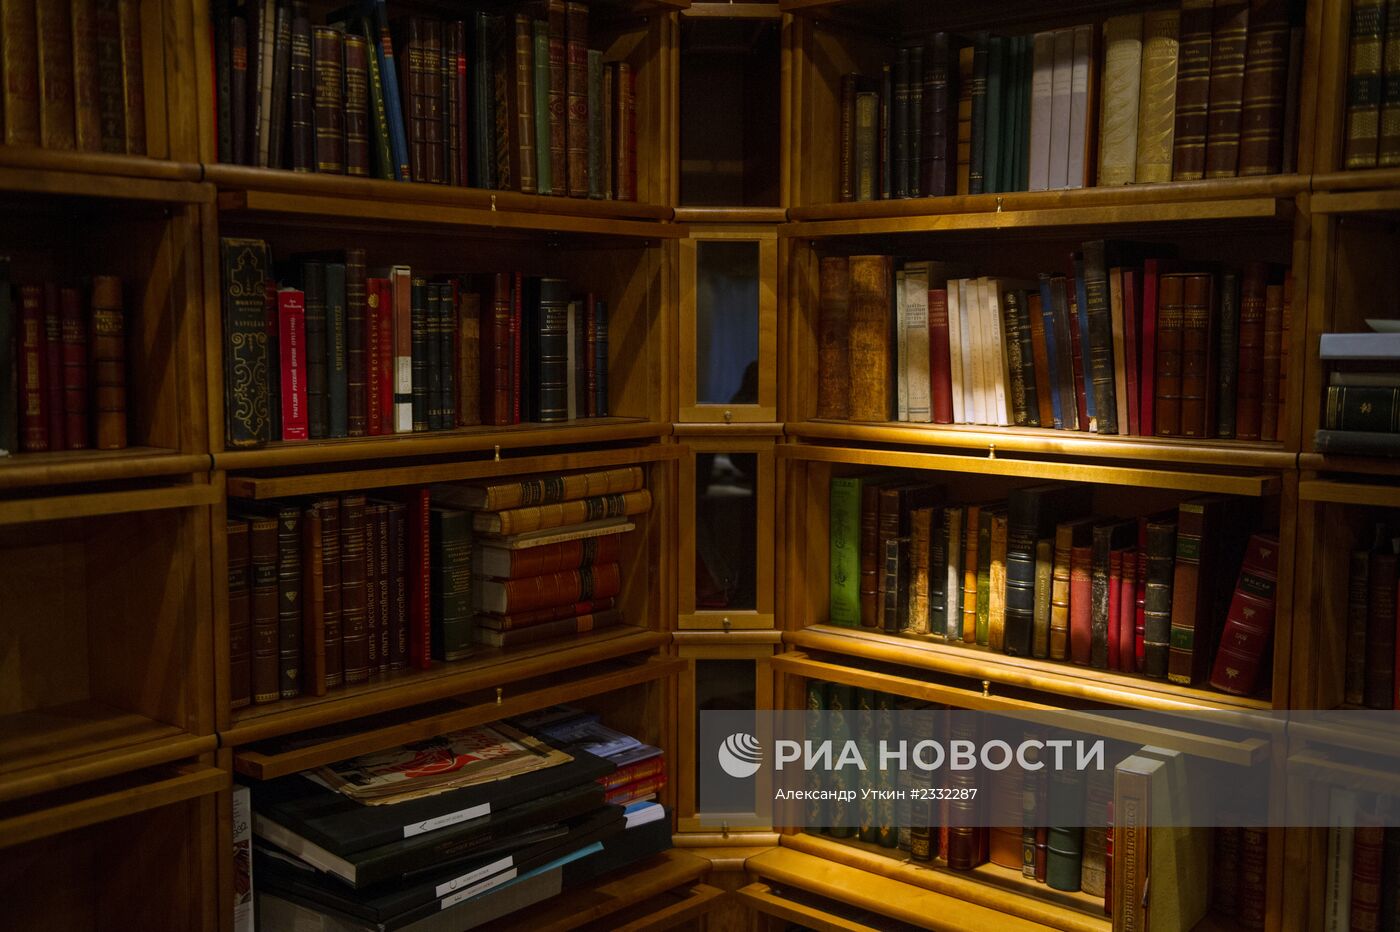 "Дом антикварной книги в Никитском"